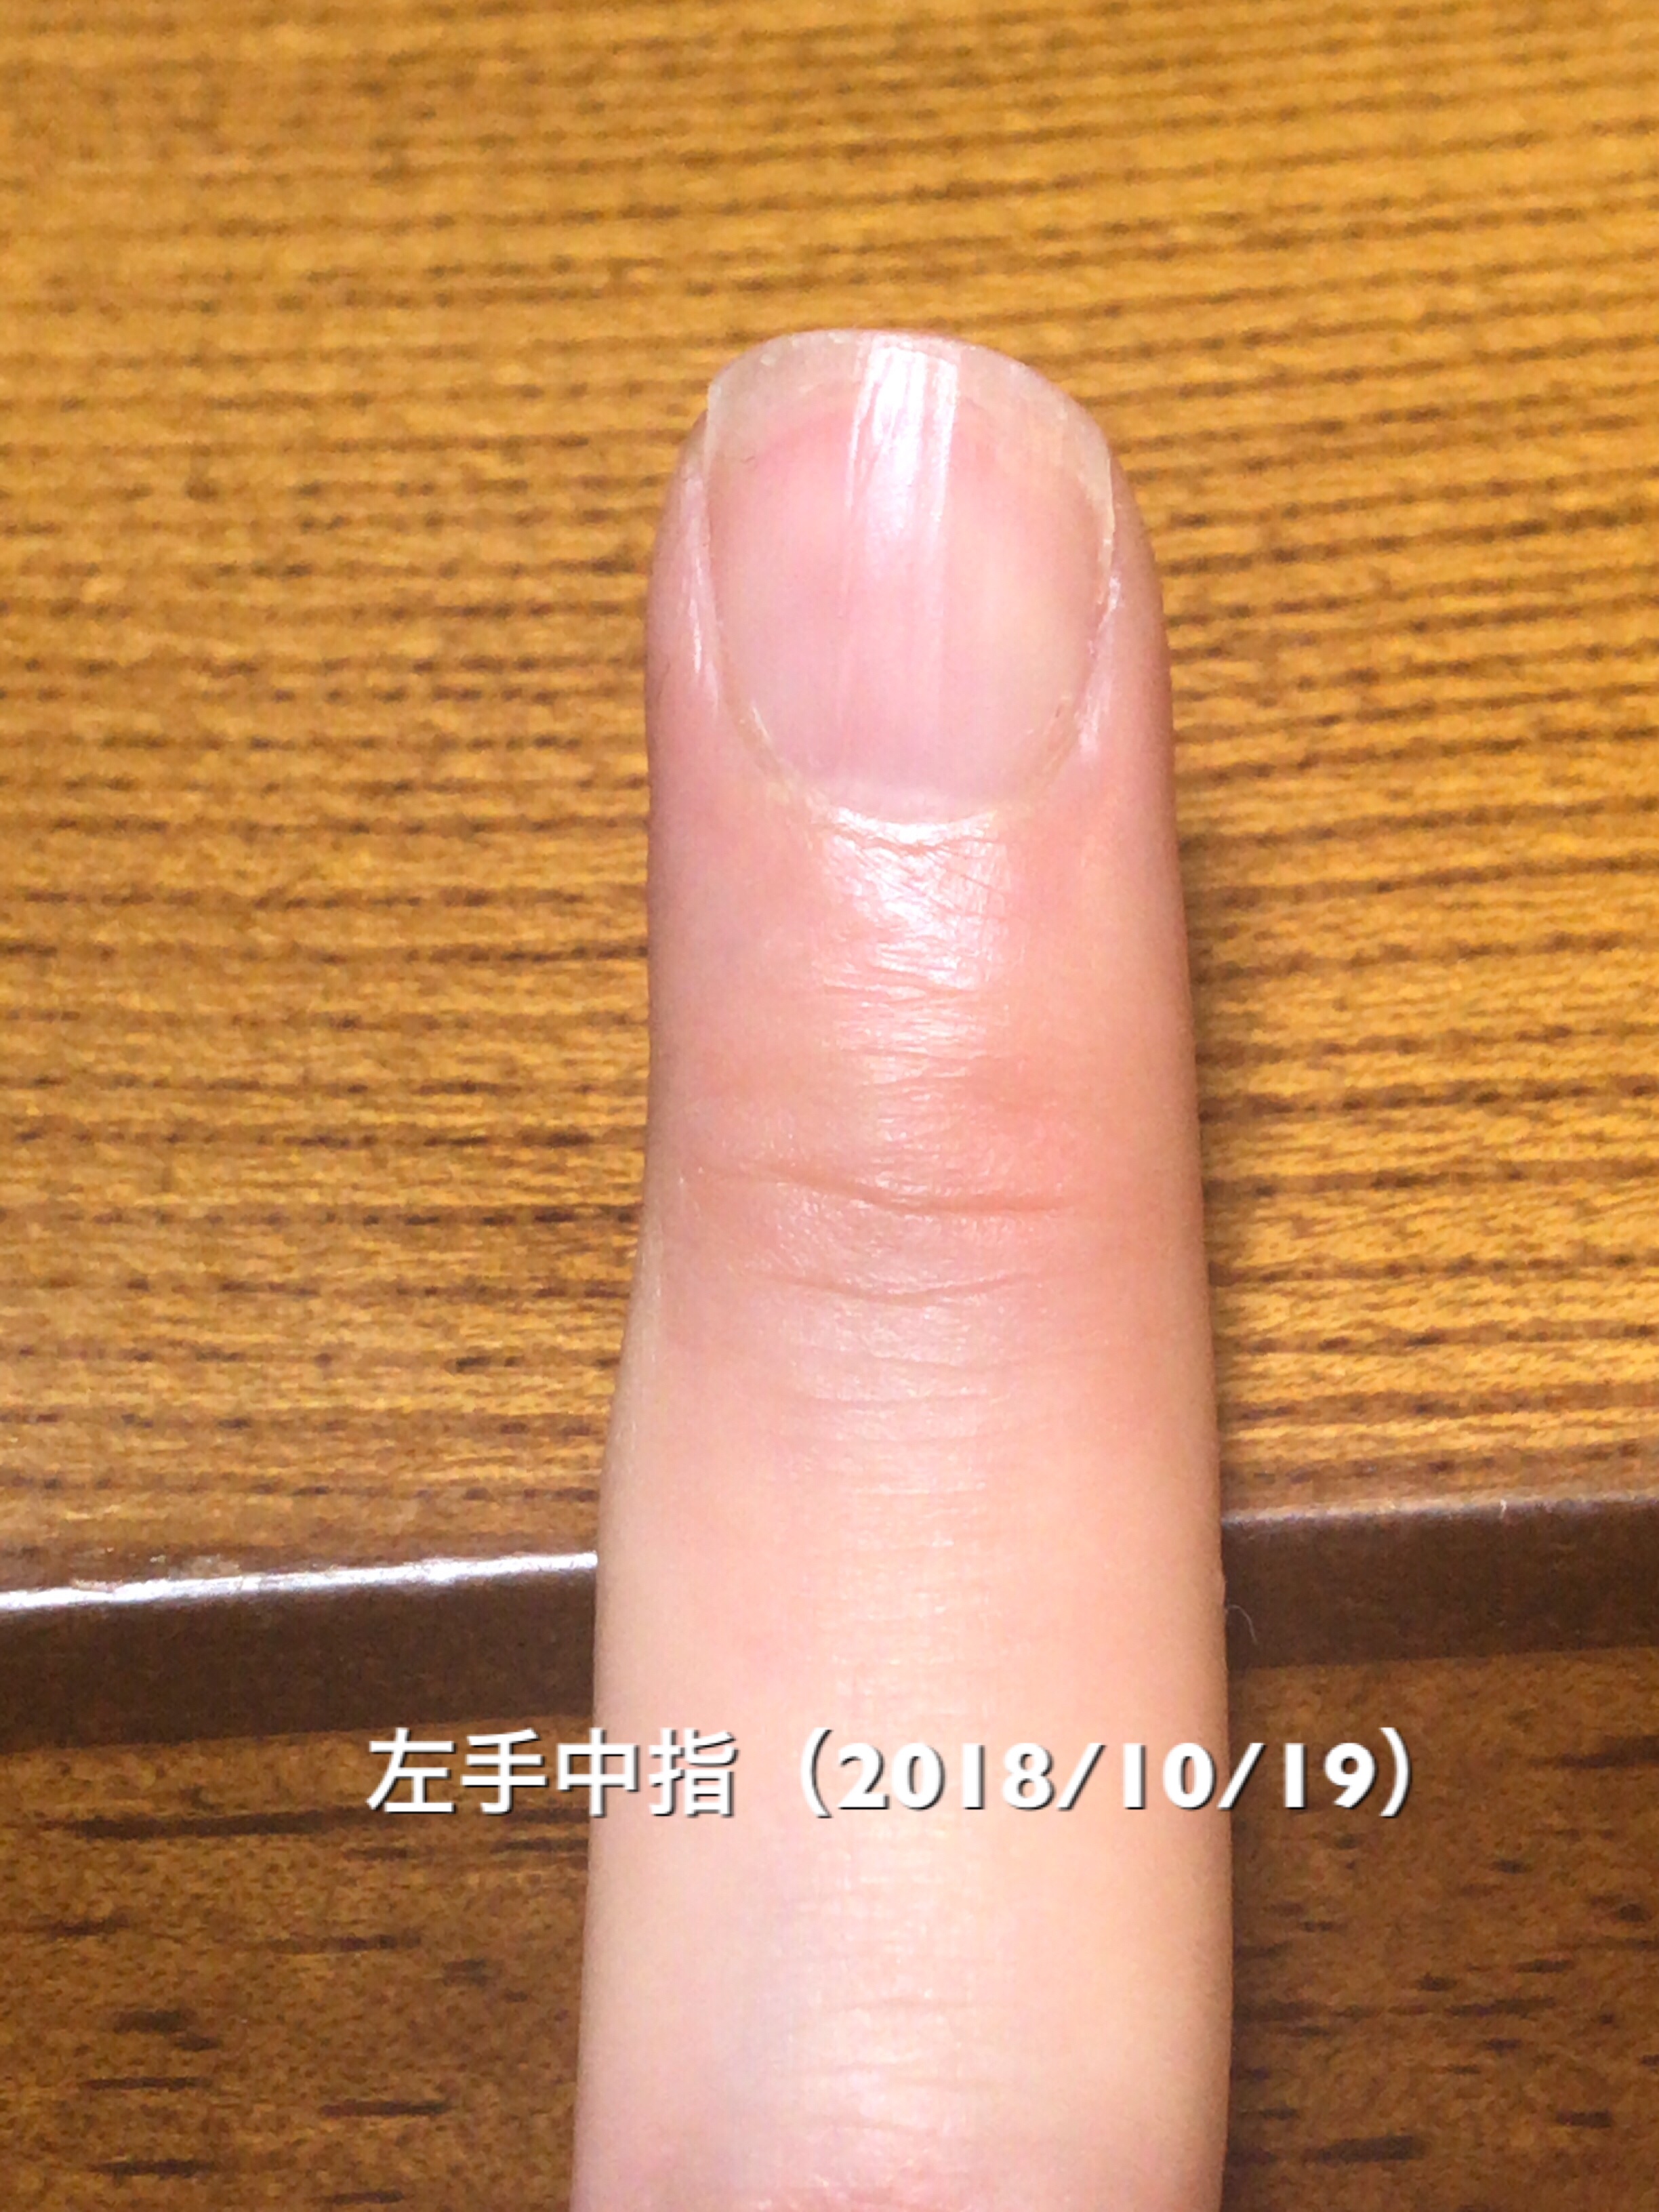 左手薬指は、中央部分のハイポニキウムの成長が著しく、サイド部分がそれに続くような仕上がりに。乾燥具合とかそういった影響でしょうか？左右差ありますが、サイドラインも着々と形成。均等に形を整えていきたいところです。という写真